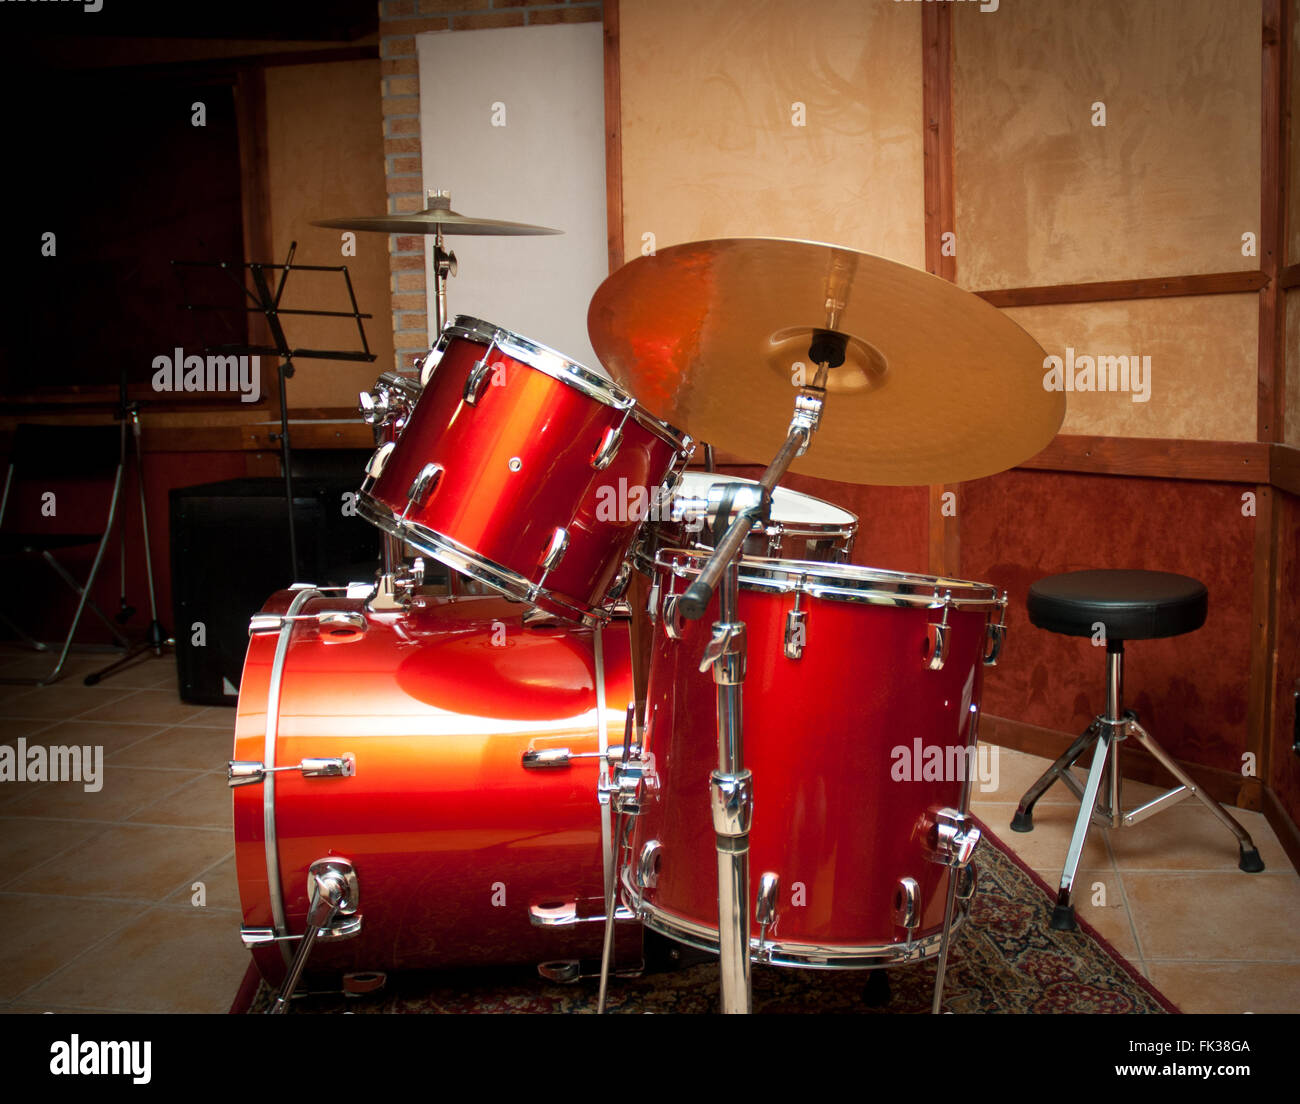 Red strumento drum con tom e cembalo in legno da studio di registrazione Foto Stock